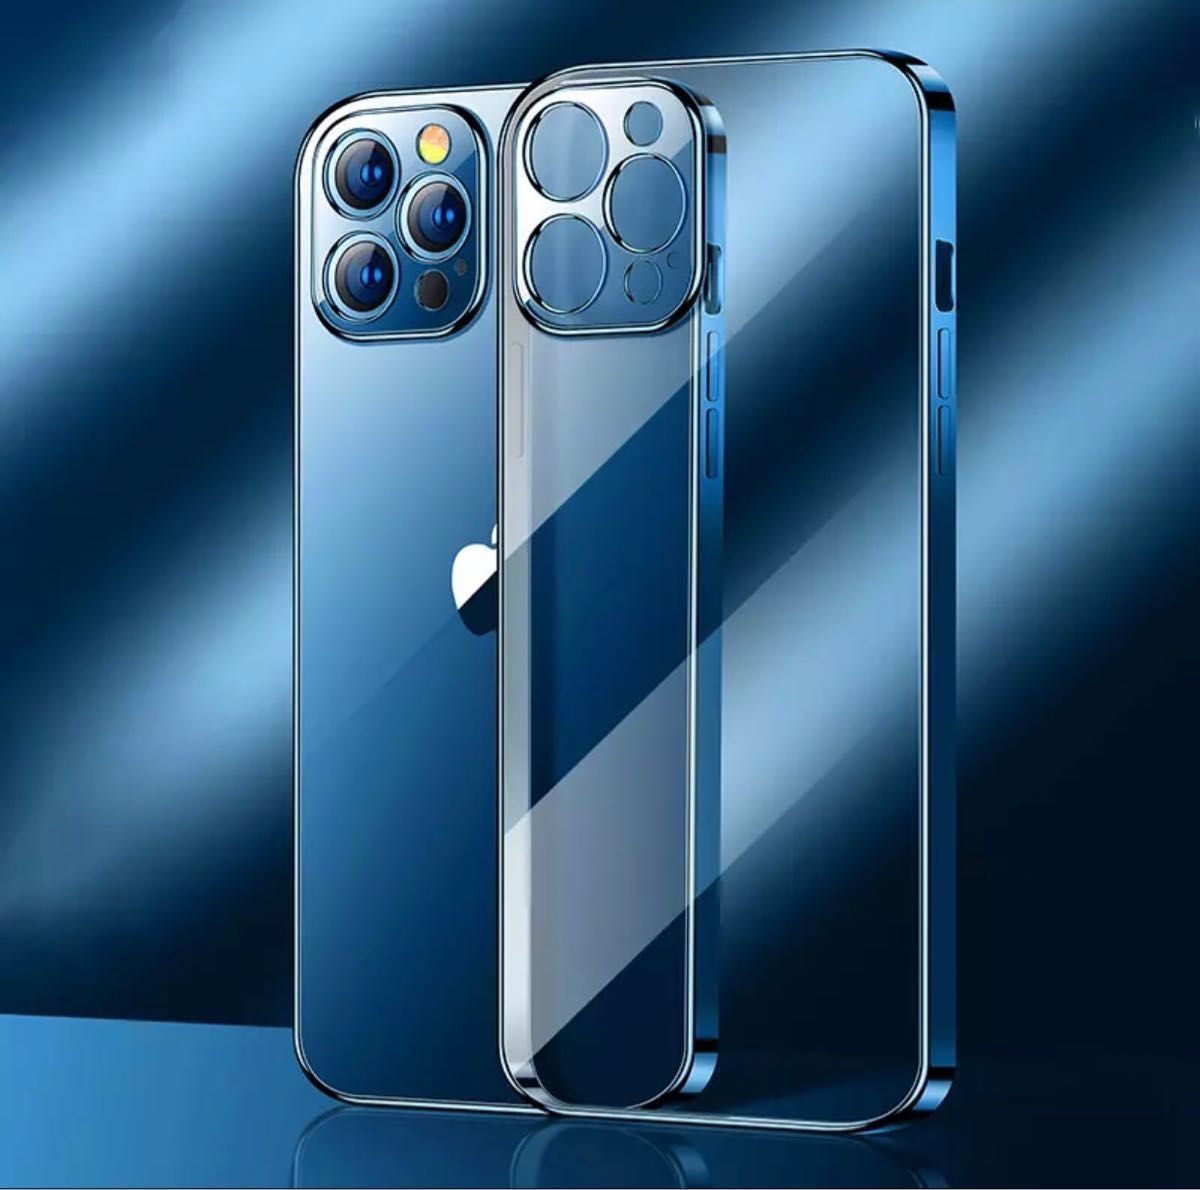 シンプル メタリック iPhone クリア ケース iPhone12 ブルー シリコンケース 耐衝撃 人気商品 安い 韓国 